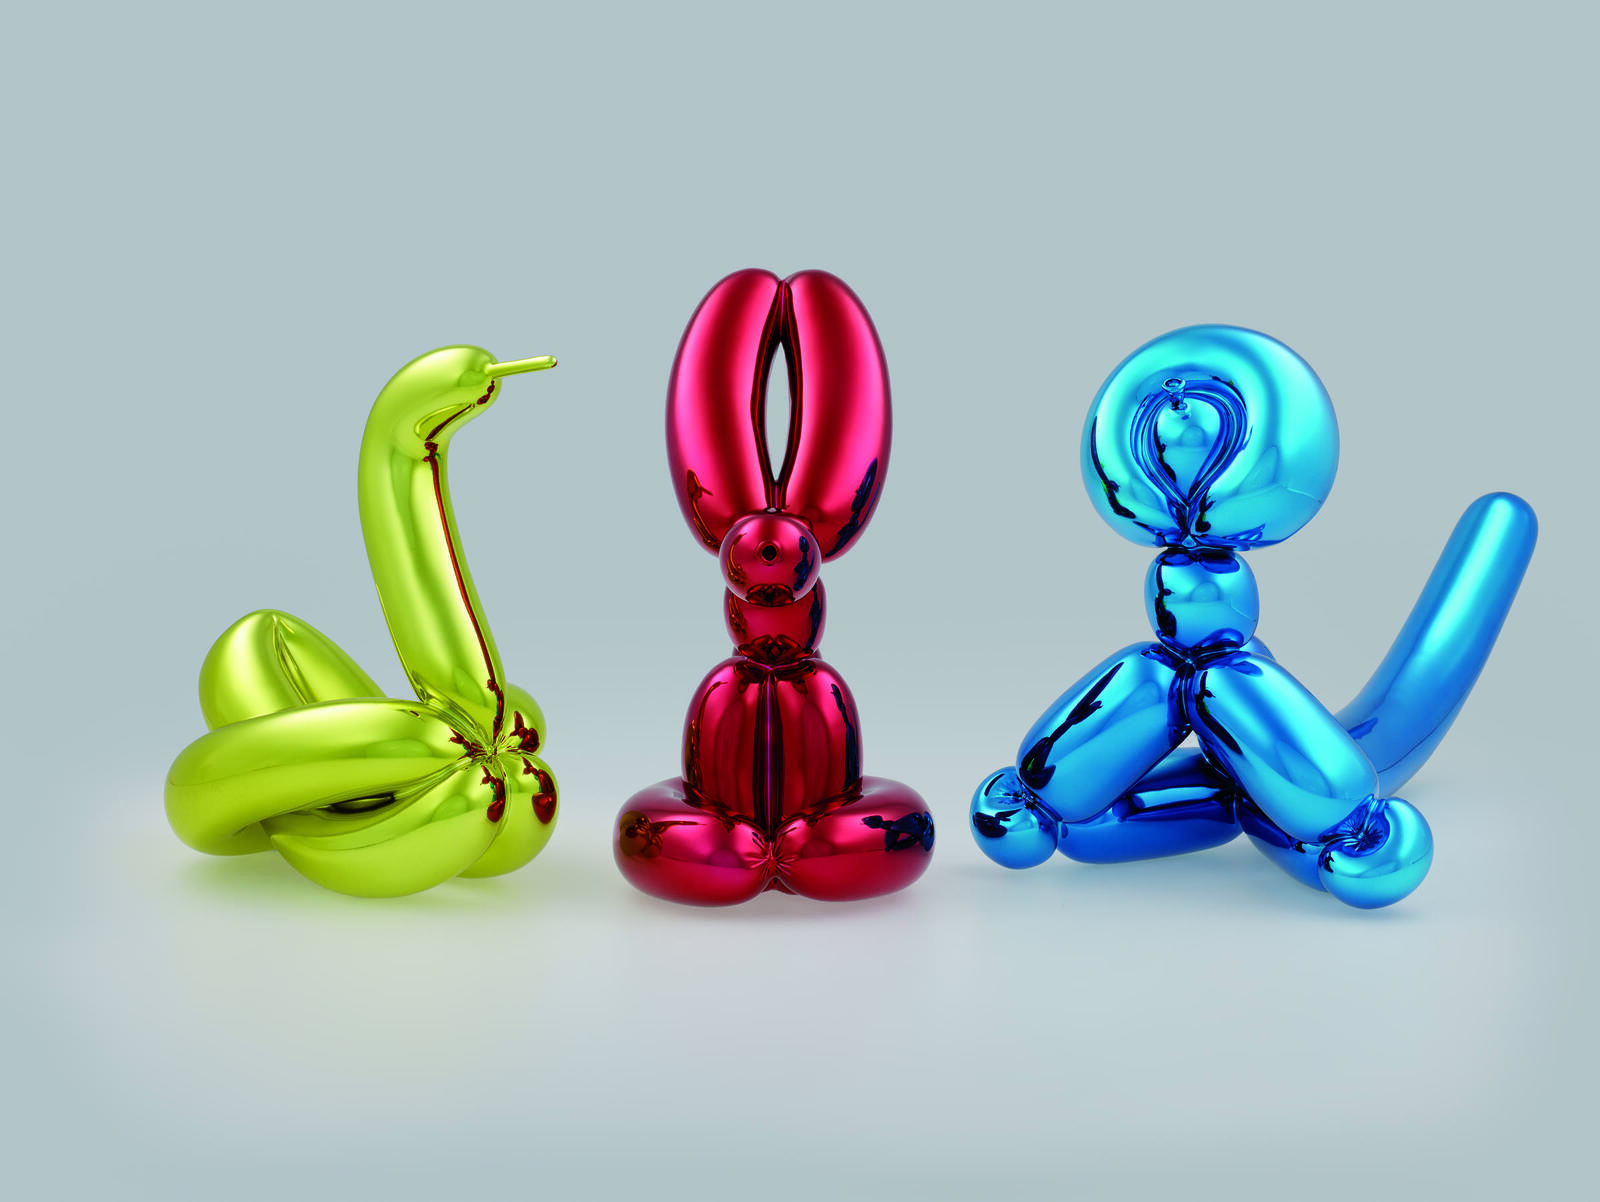 Die weltberühmten Ballon-Skulpturen von Jeff Koons mit der glänzenden Oberfläche aus Edelstahl Rostfrei wurden zu seinem Markenzeichen.